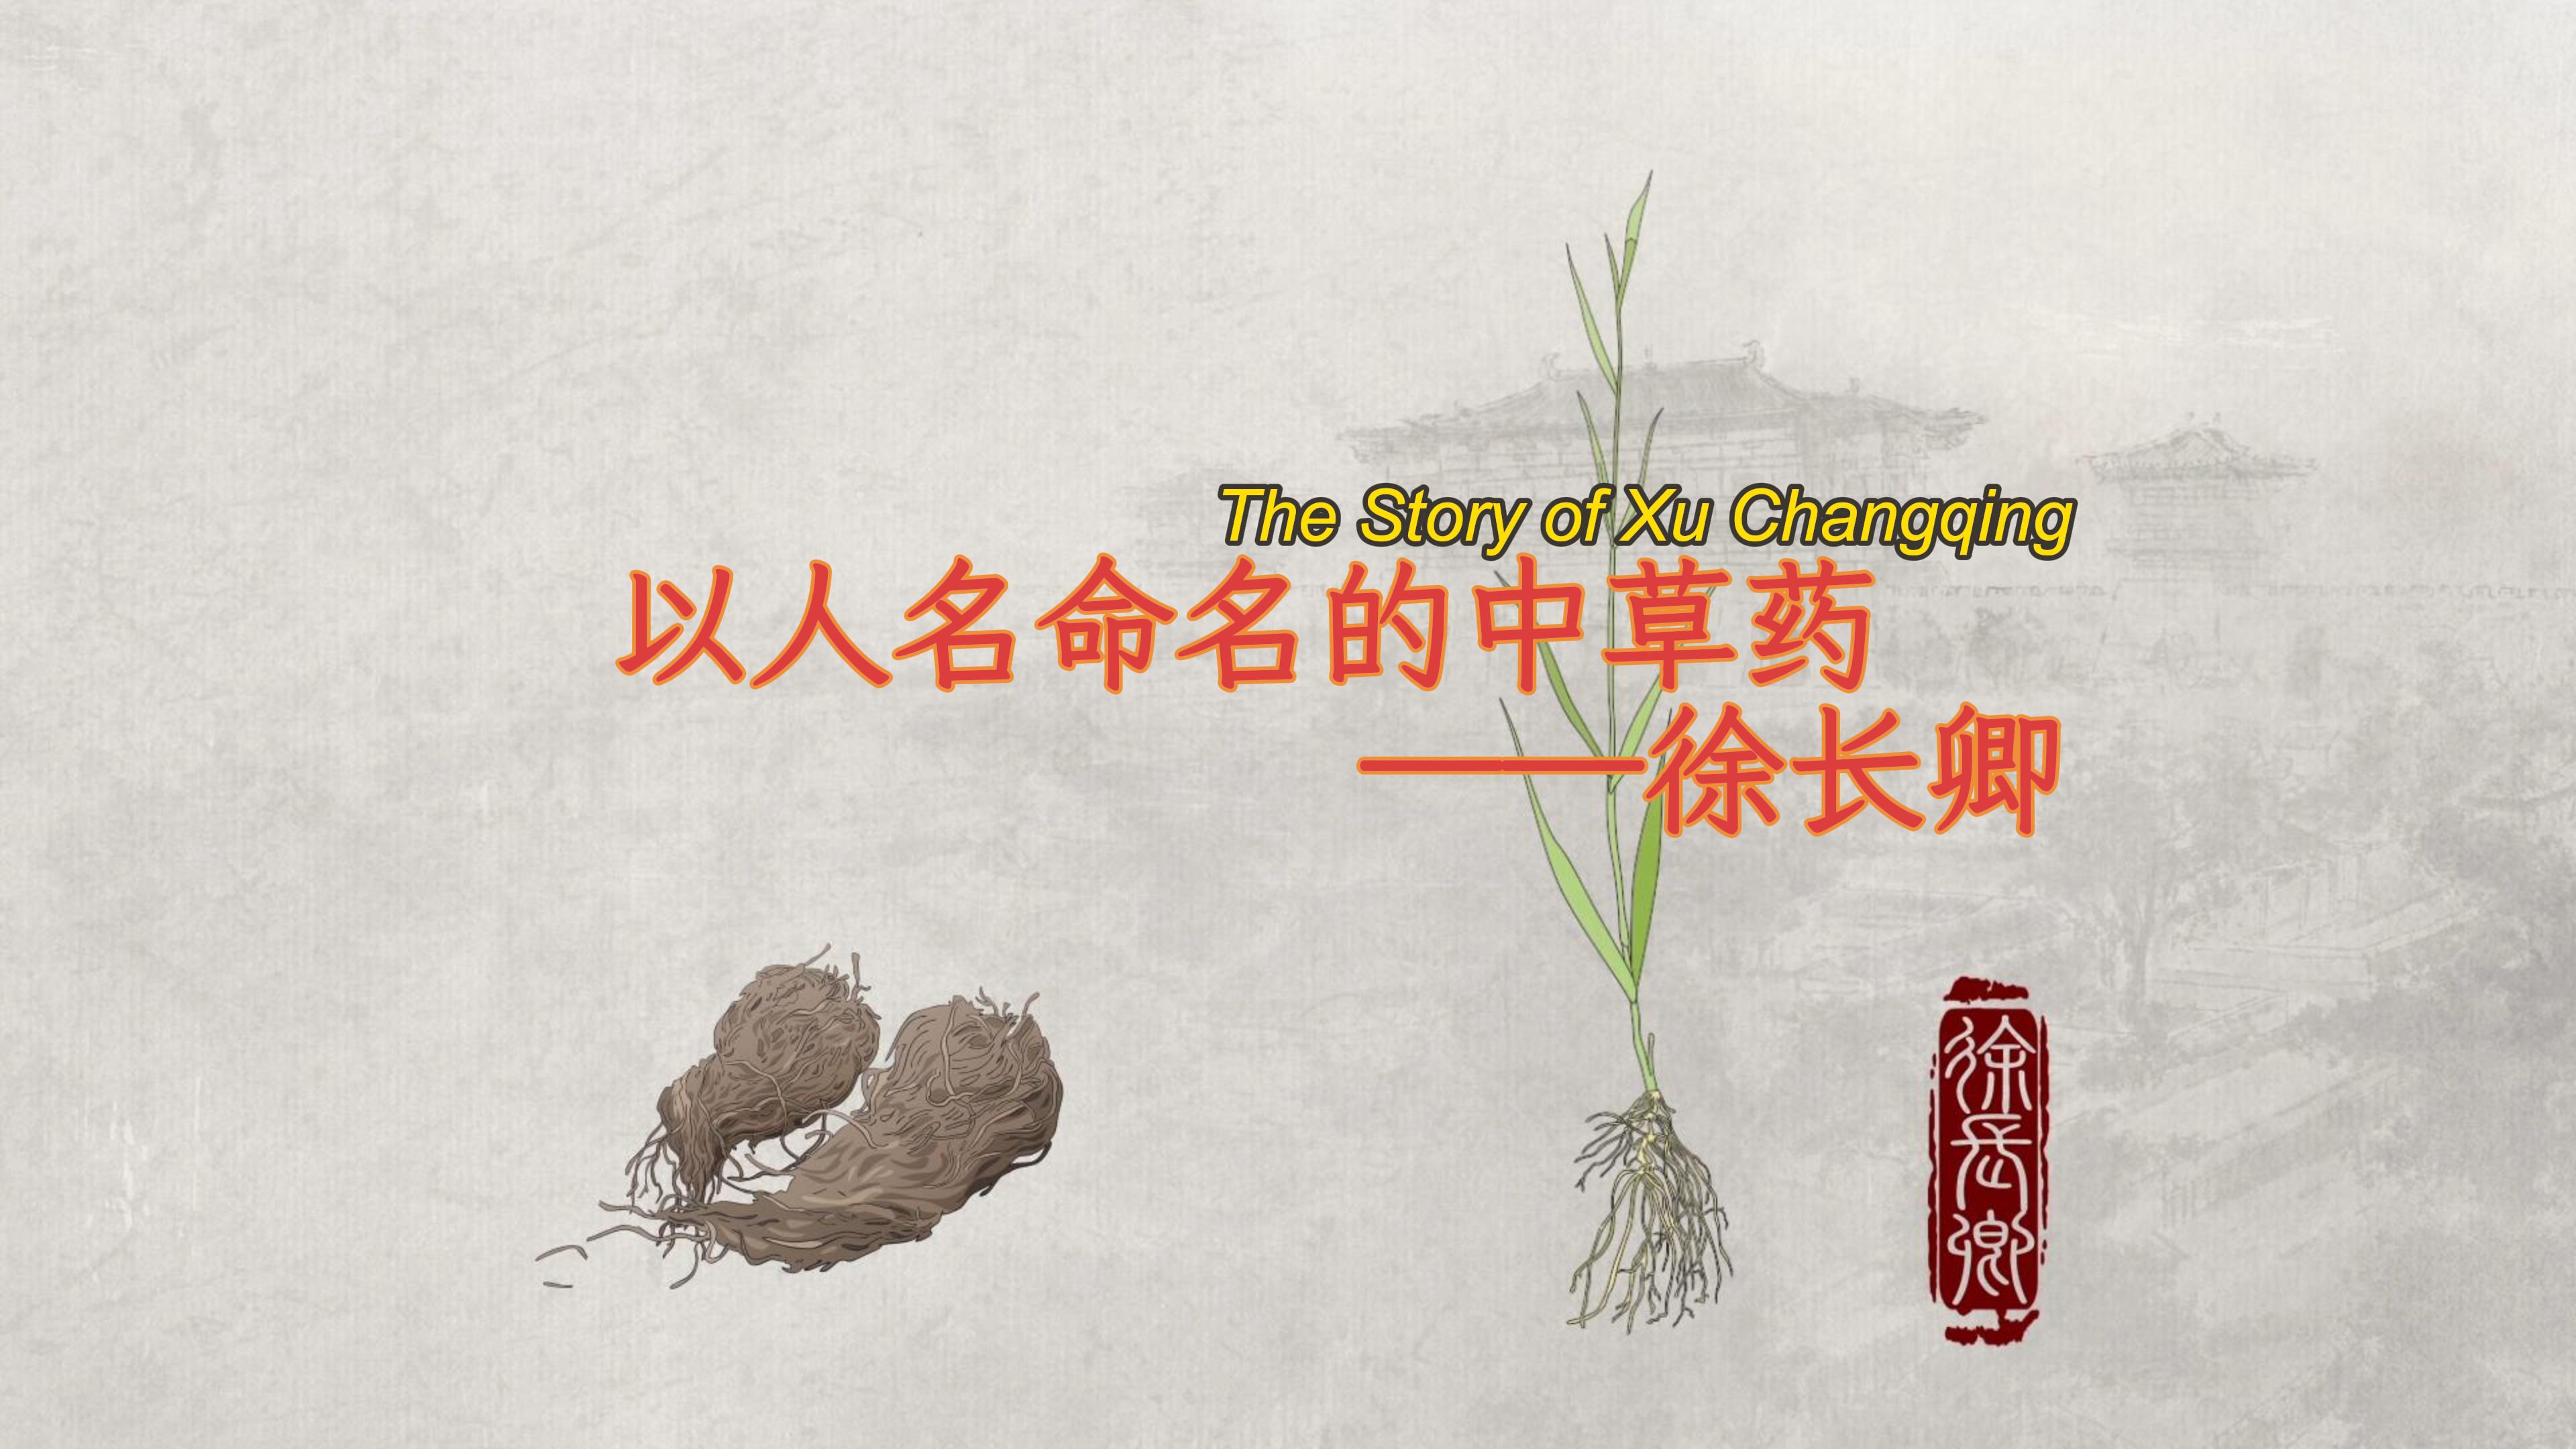 The story of Xu Changqing